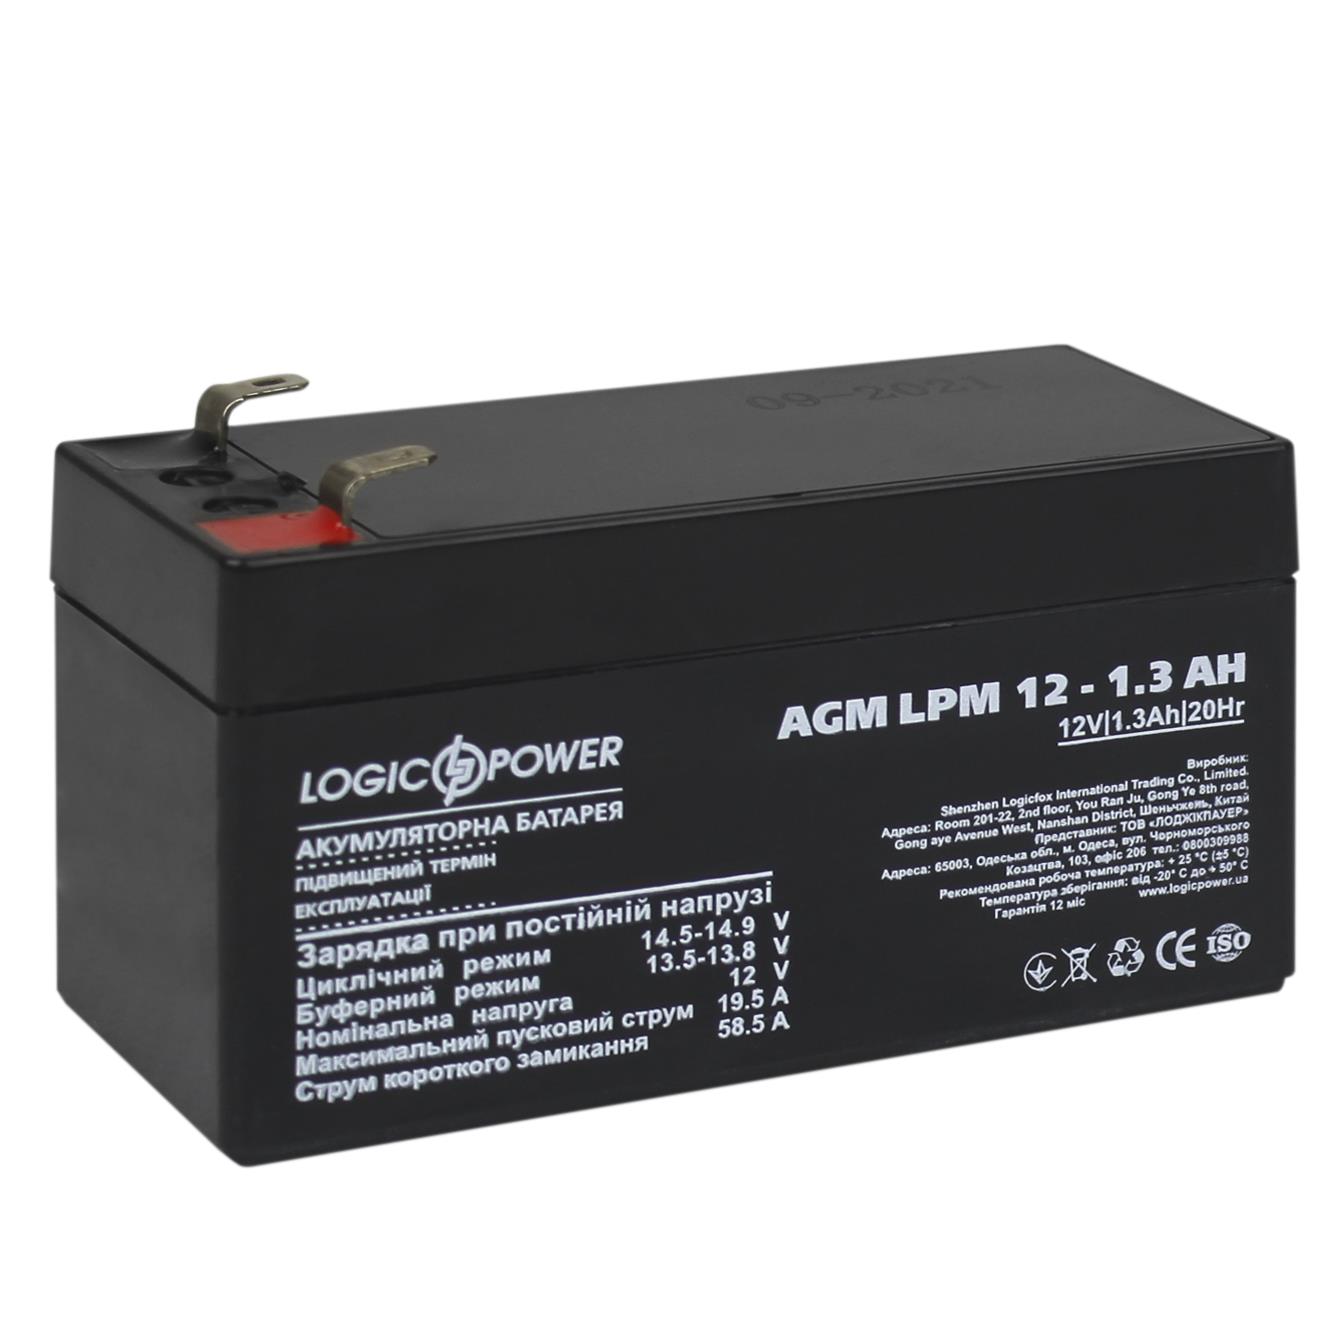 Акумулятор свинцево-кислотний LogicPower AGM LPM 12V - 1.3 Ah (4131) ціна 301.20 грн - фотографія 2